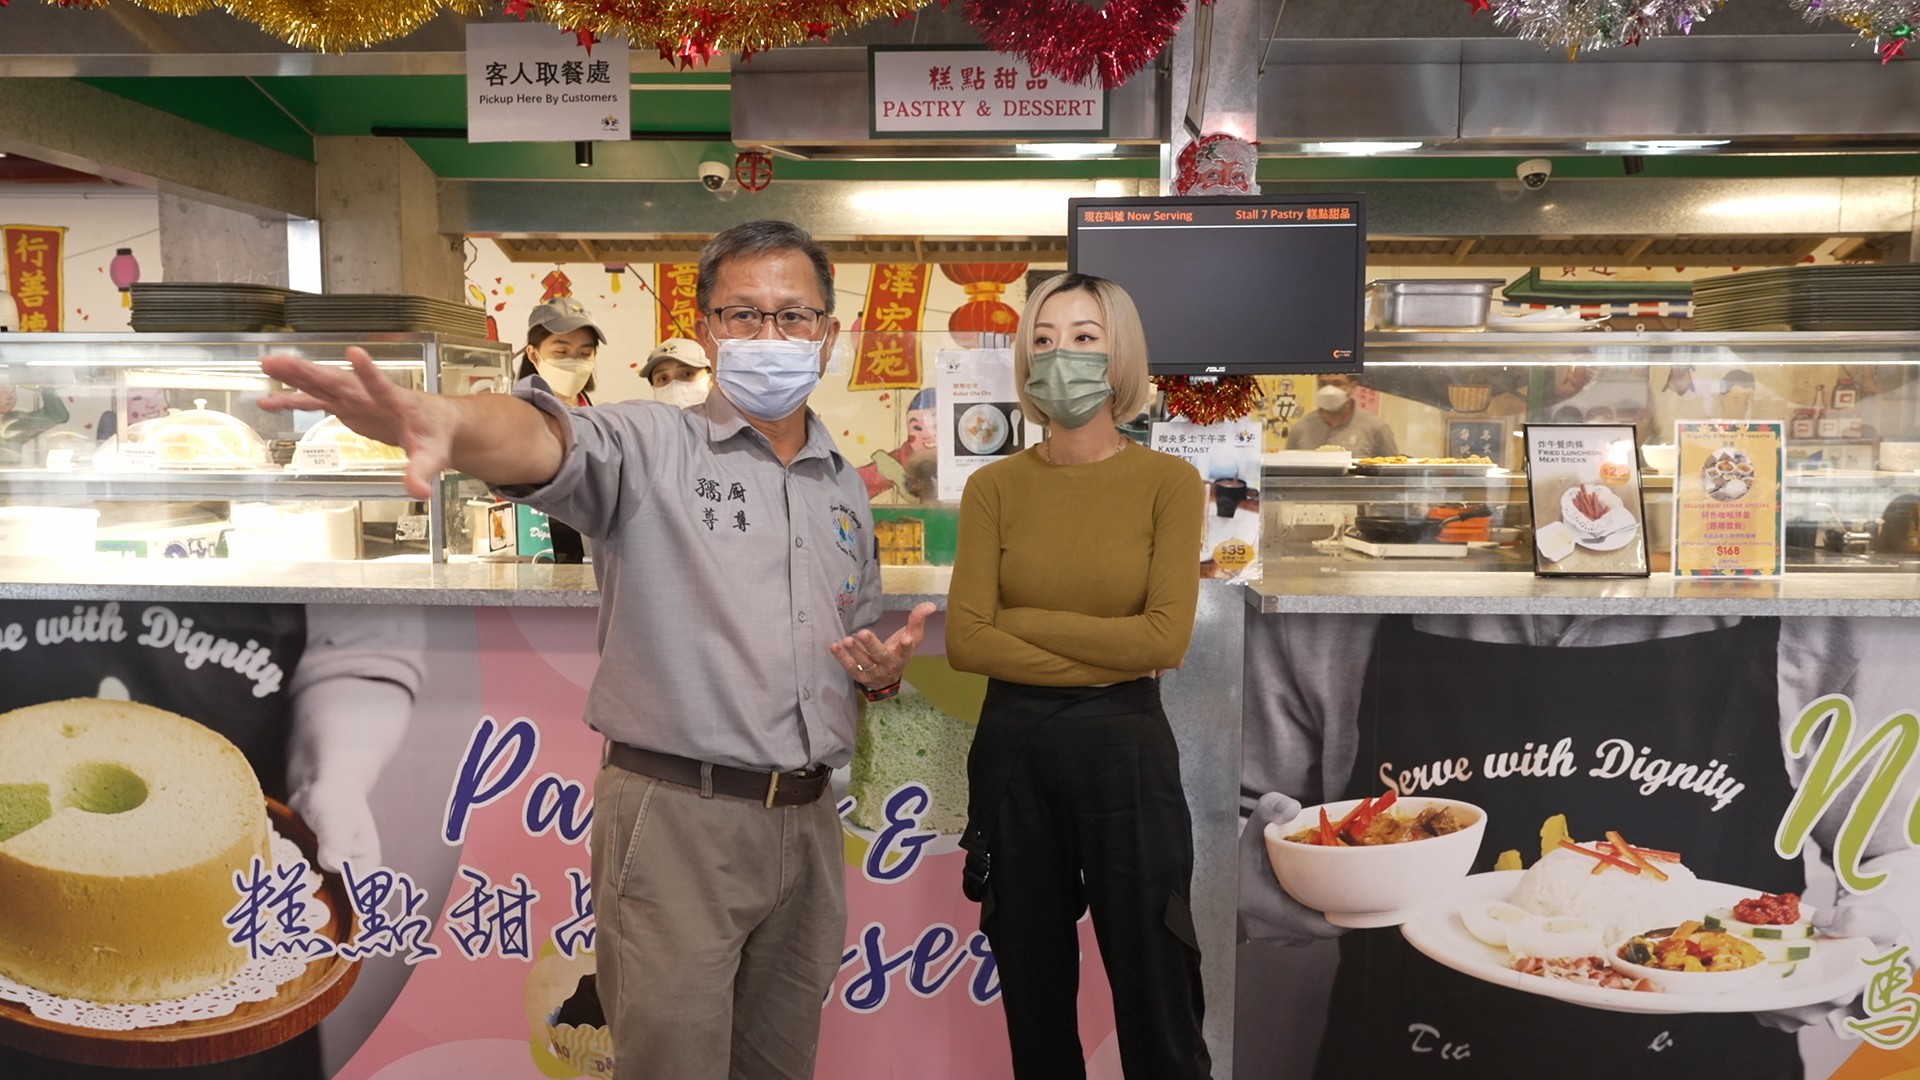 來自新加坡的社企創辦人Mr. Koh(圖左)向泳兒(圖右)介紹社企餐廳「廚尊」的創辦理念與營運模式。